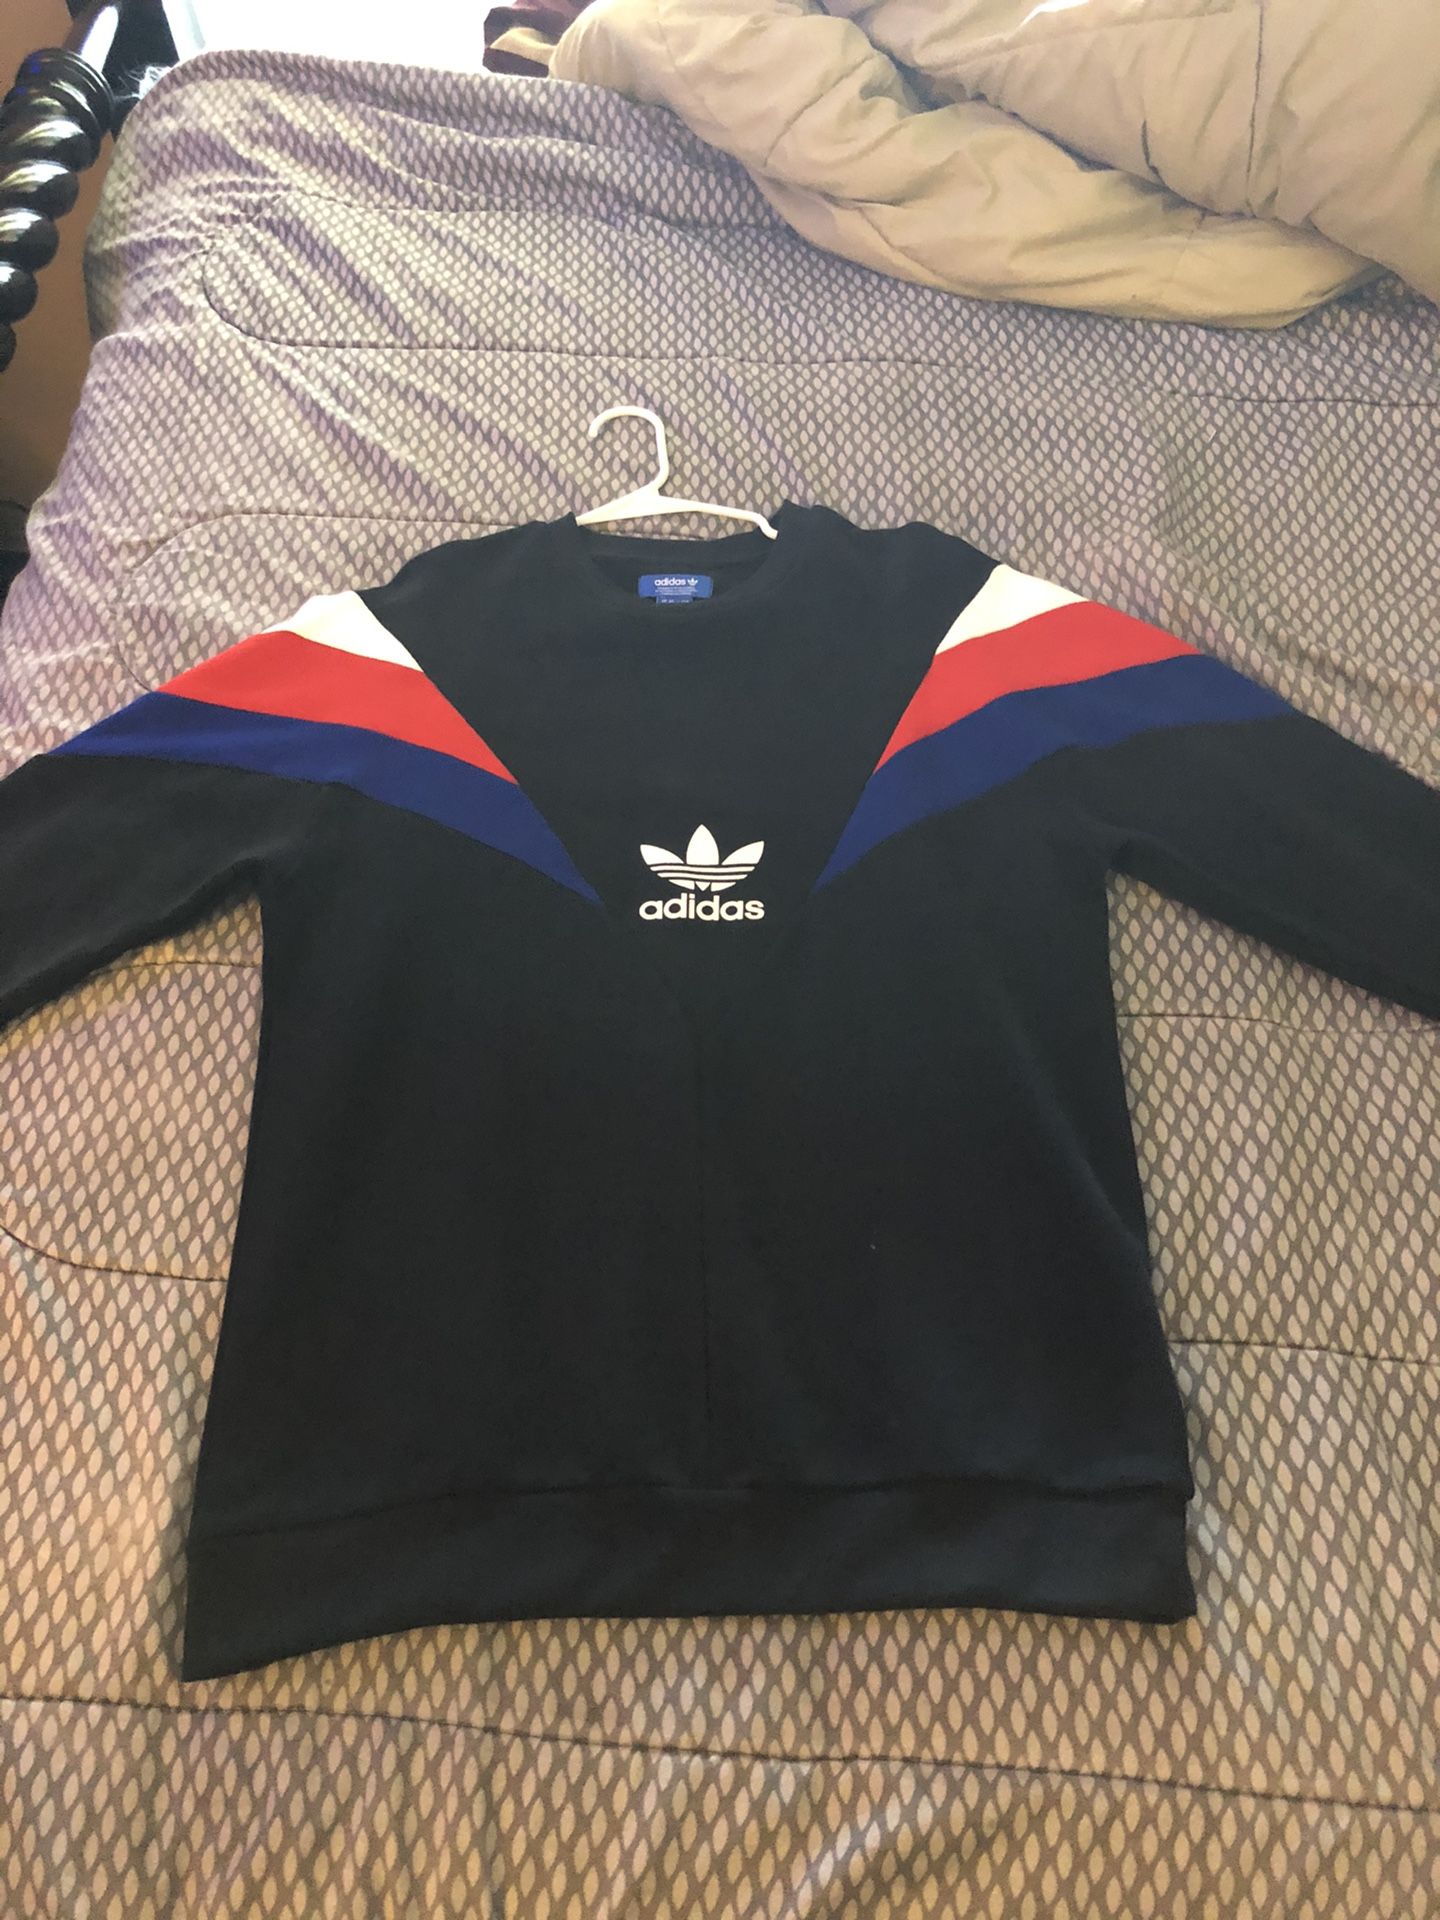 Adidas Crew Neck Sweater